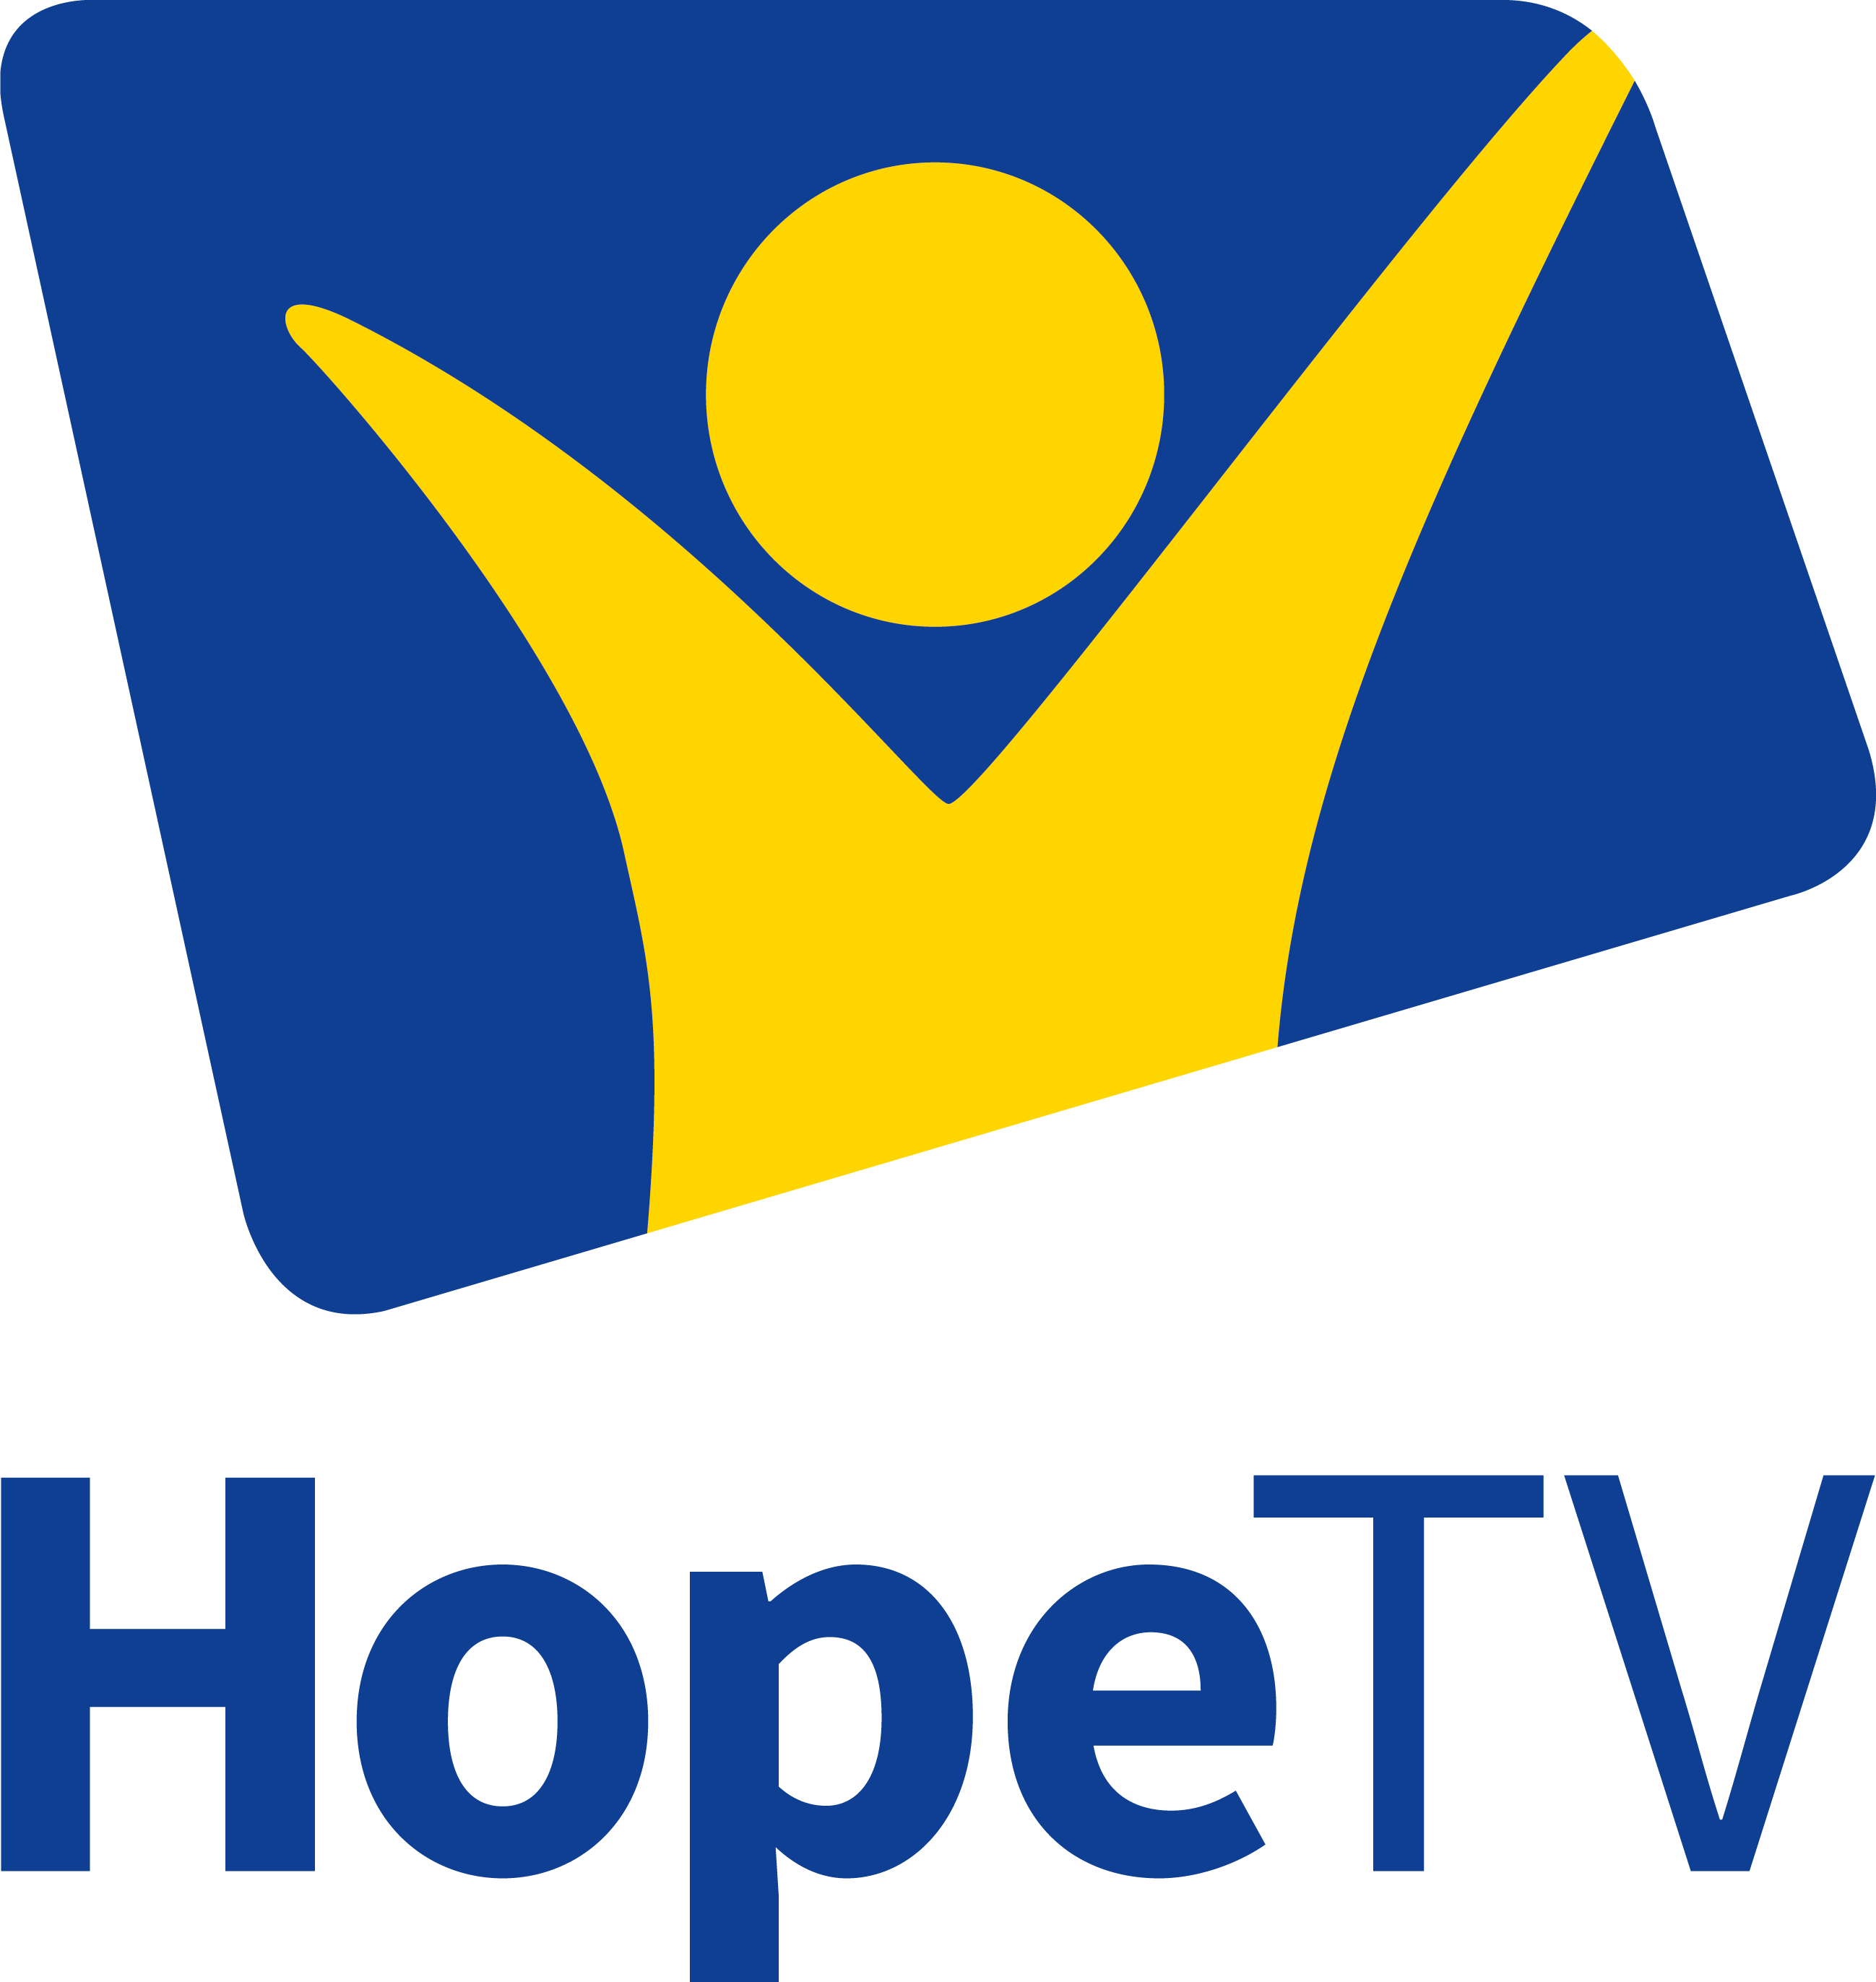 Hope TV